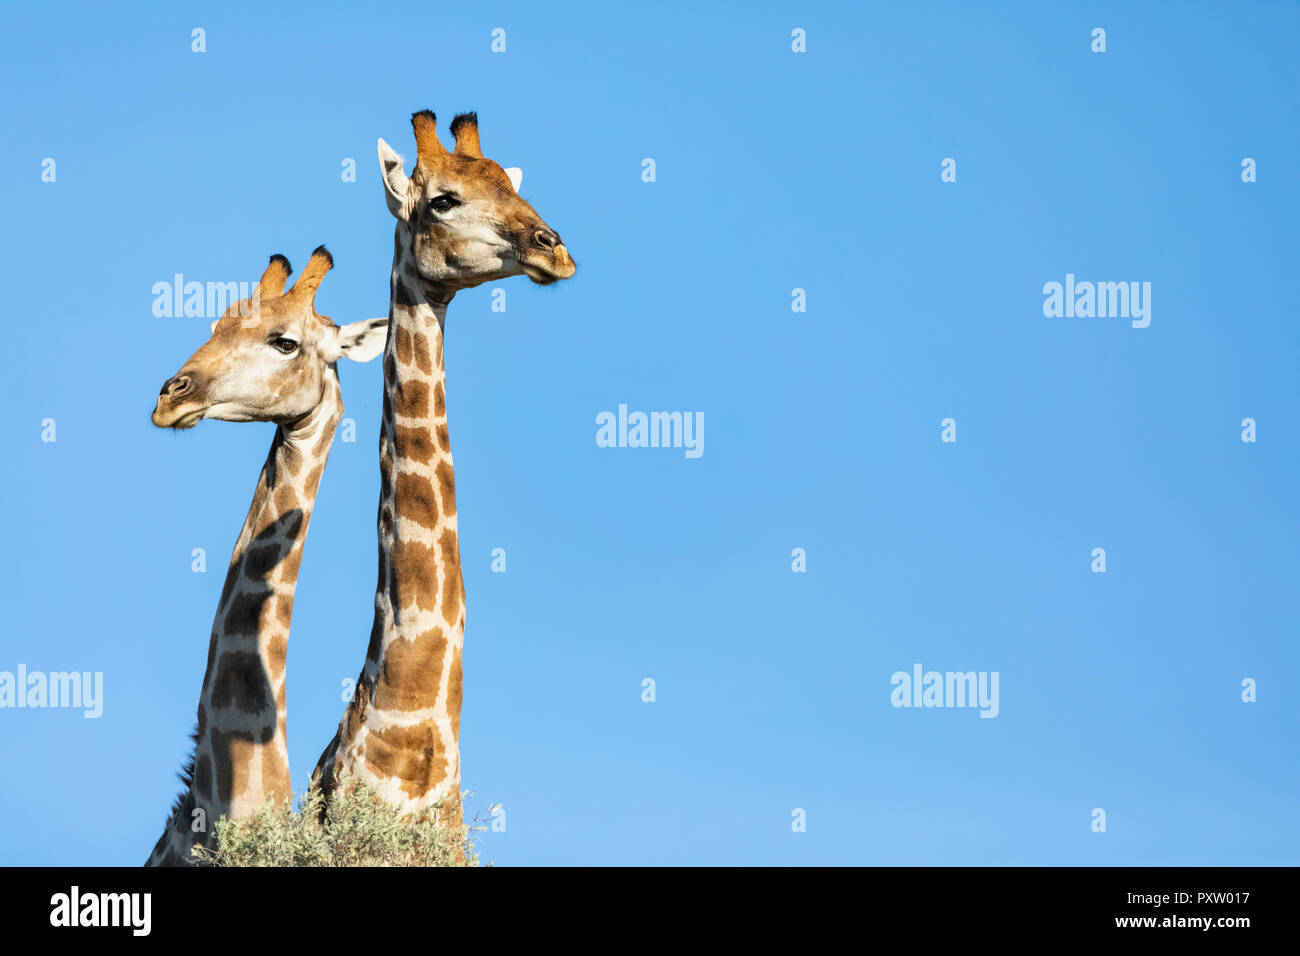 L'Afrique, Botswana, Kgalagadi Transfrontier Park, des girafes Banque D'Images